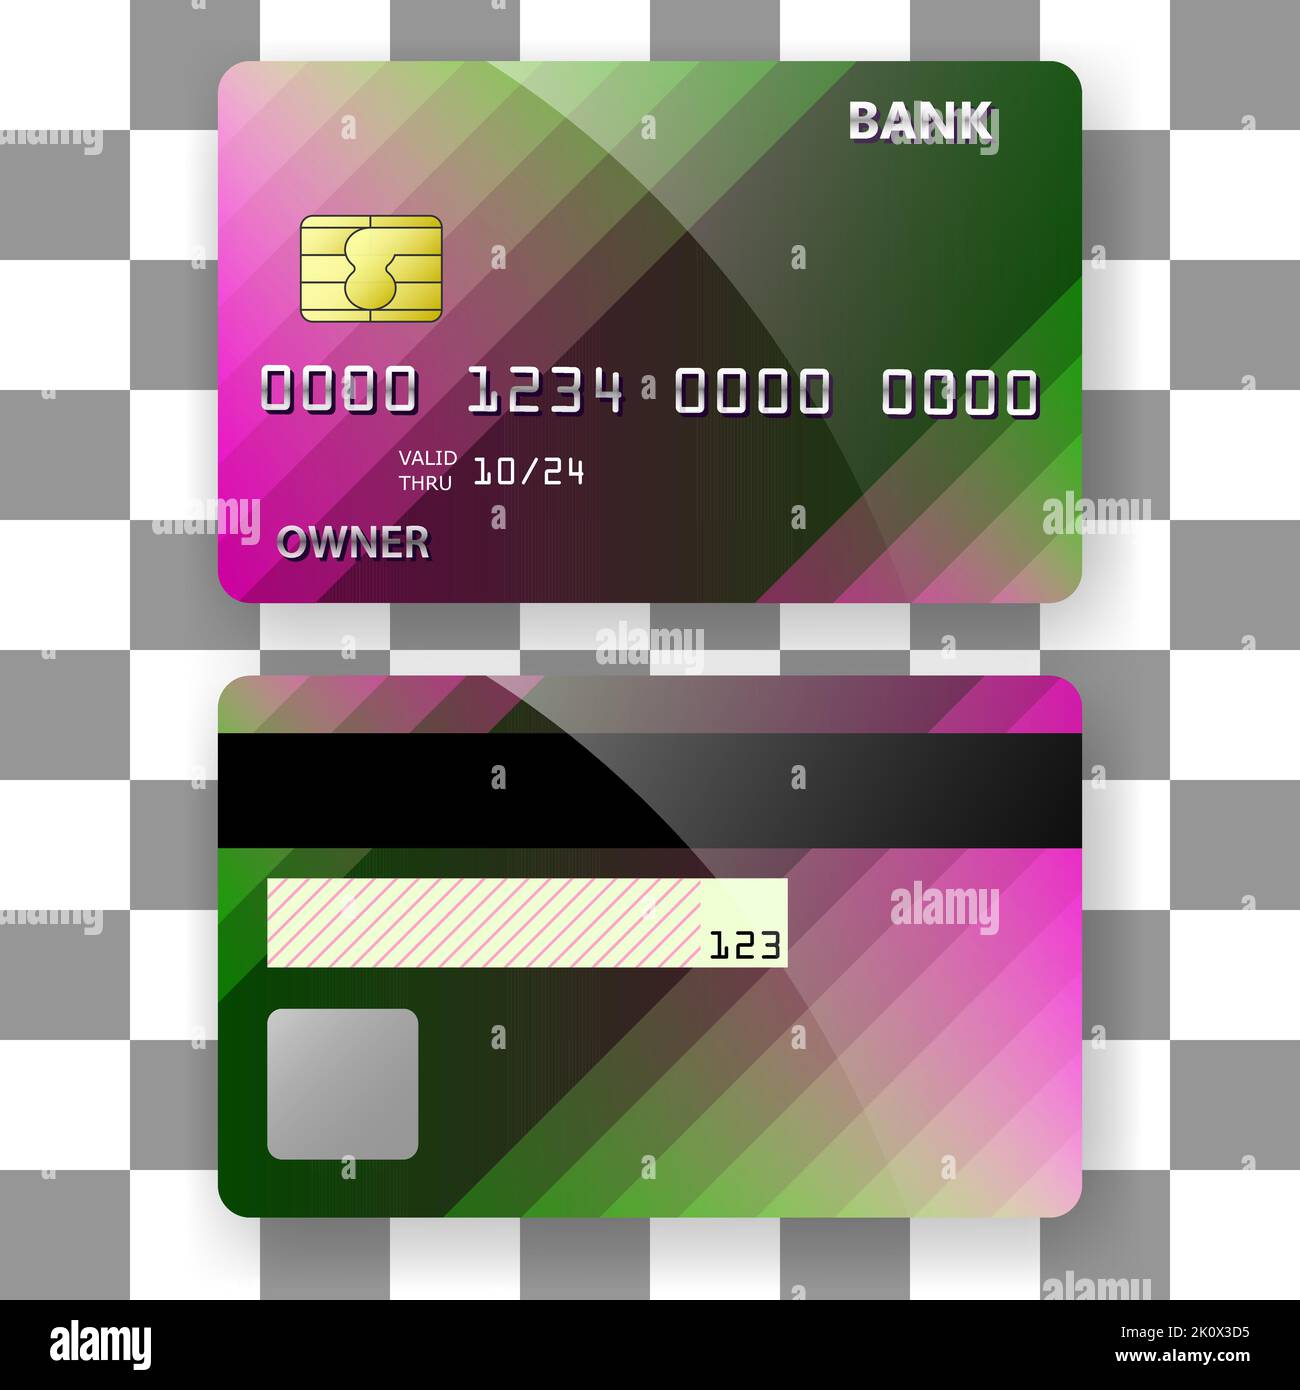 Bankkarte Vorlage Hintergrund rosa Streifen elegantes Design Kunst. Vorlage für Poster, Broschüre, Hintergründe Abdeckung etc Stock Vektor